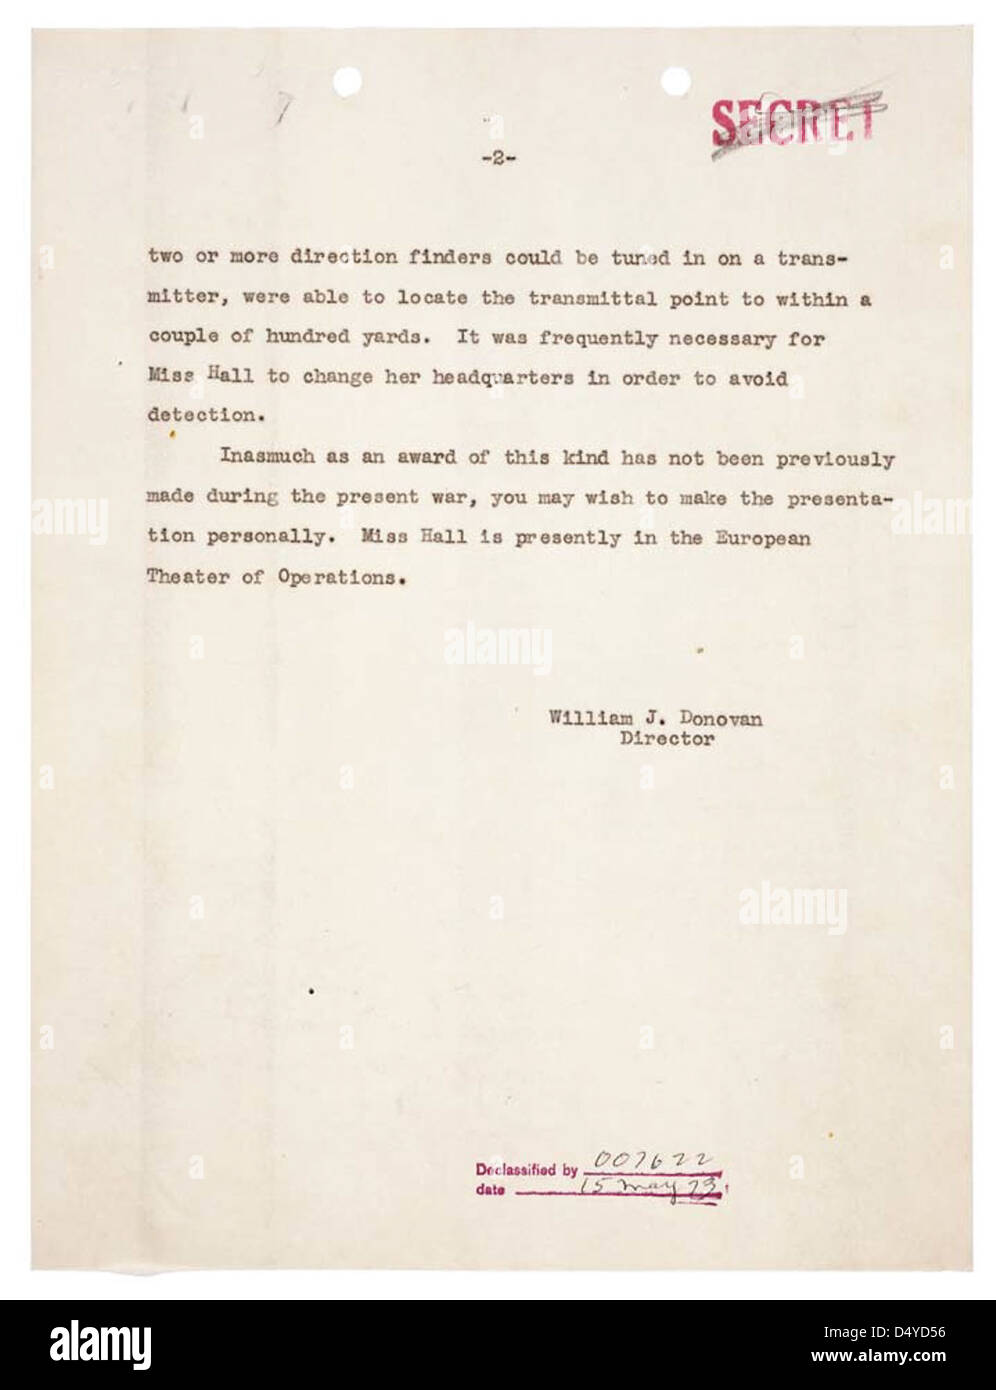 Memorandum für den Präsidenten von William J. Donovan über Distinguished Service Cross (DSC) Award zu Virginia Hall, 05.12.1945, Seite 2 von 2 Stockfoto